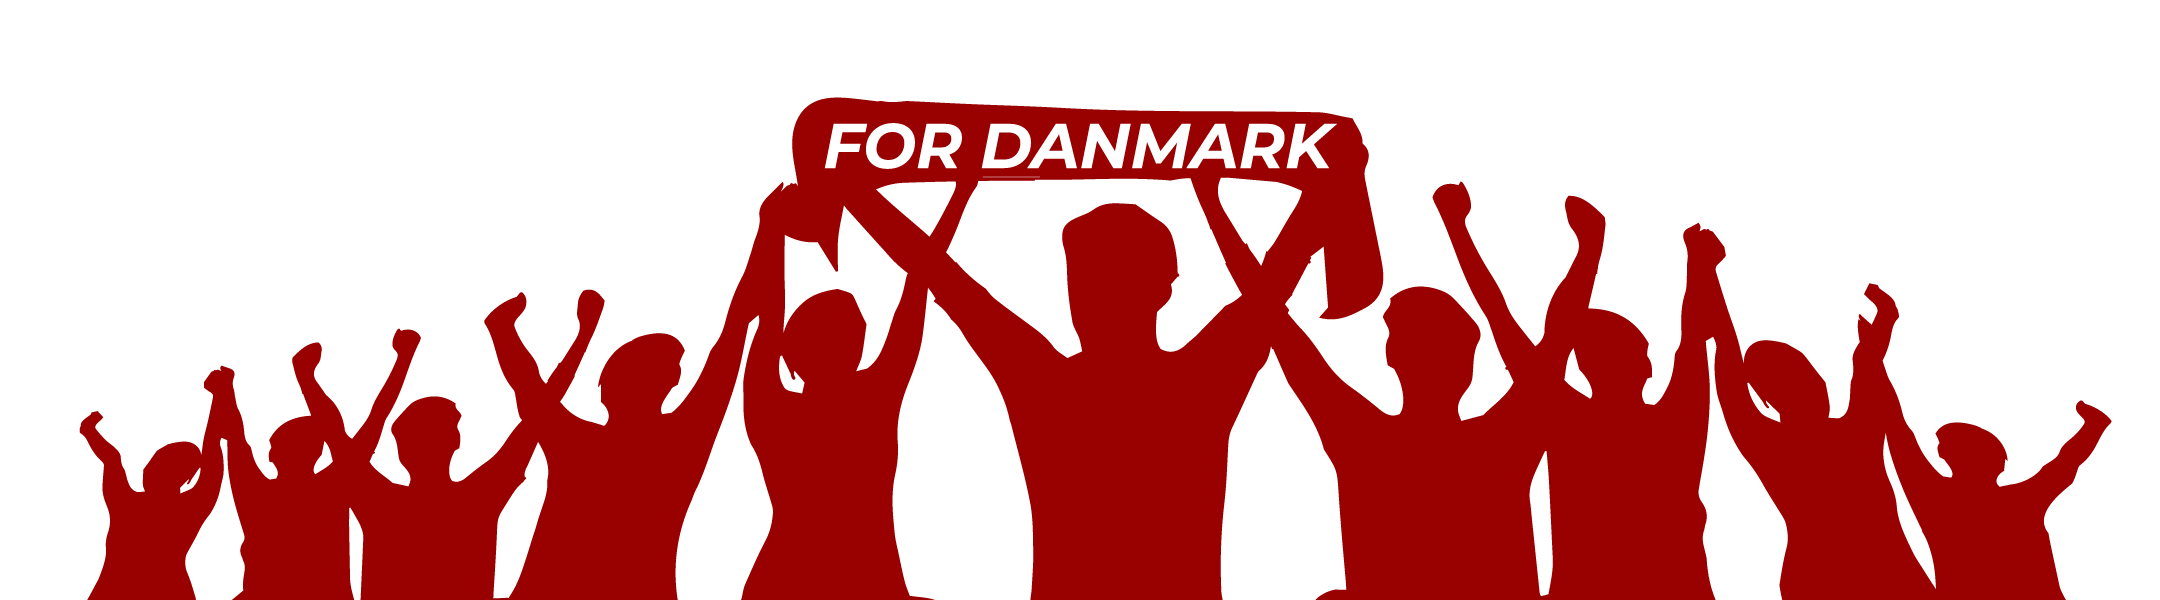 For Danmark | Fansite logo